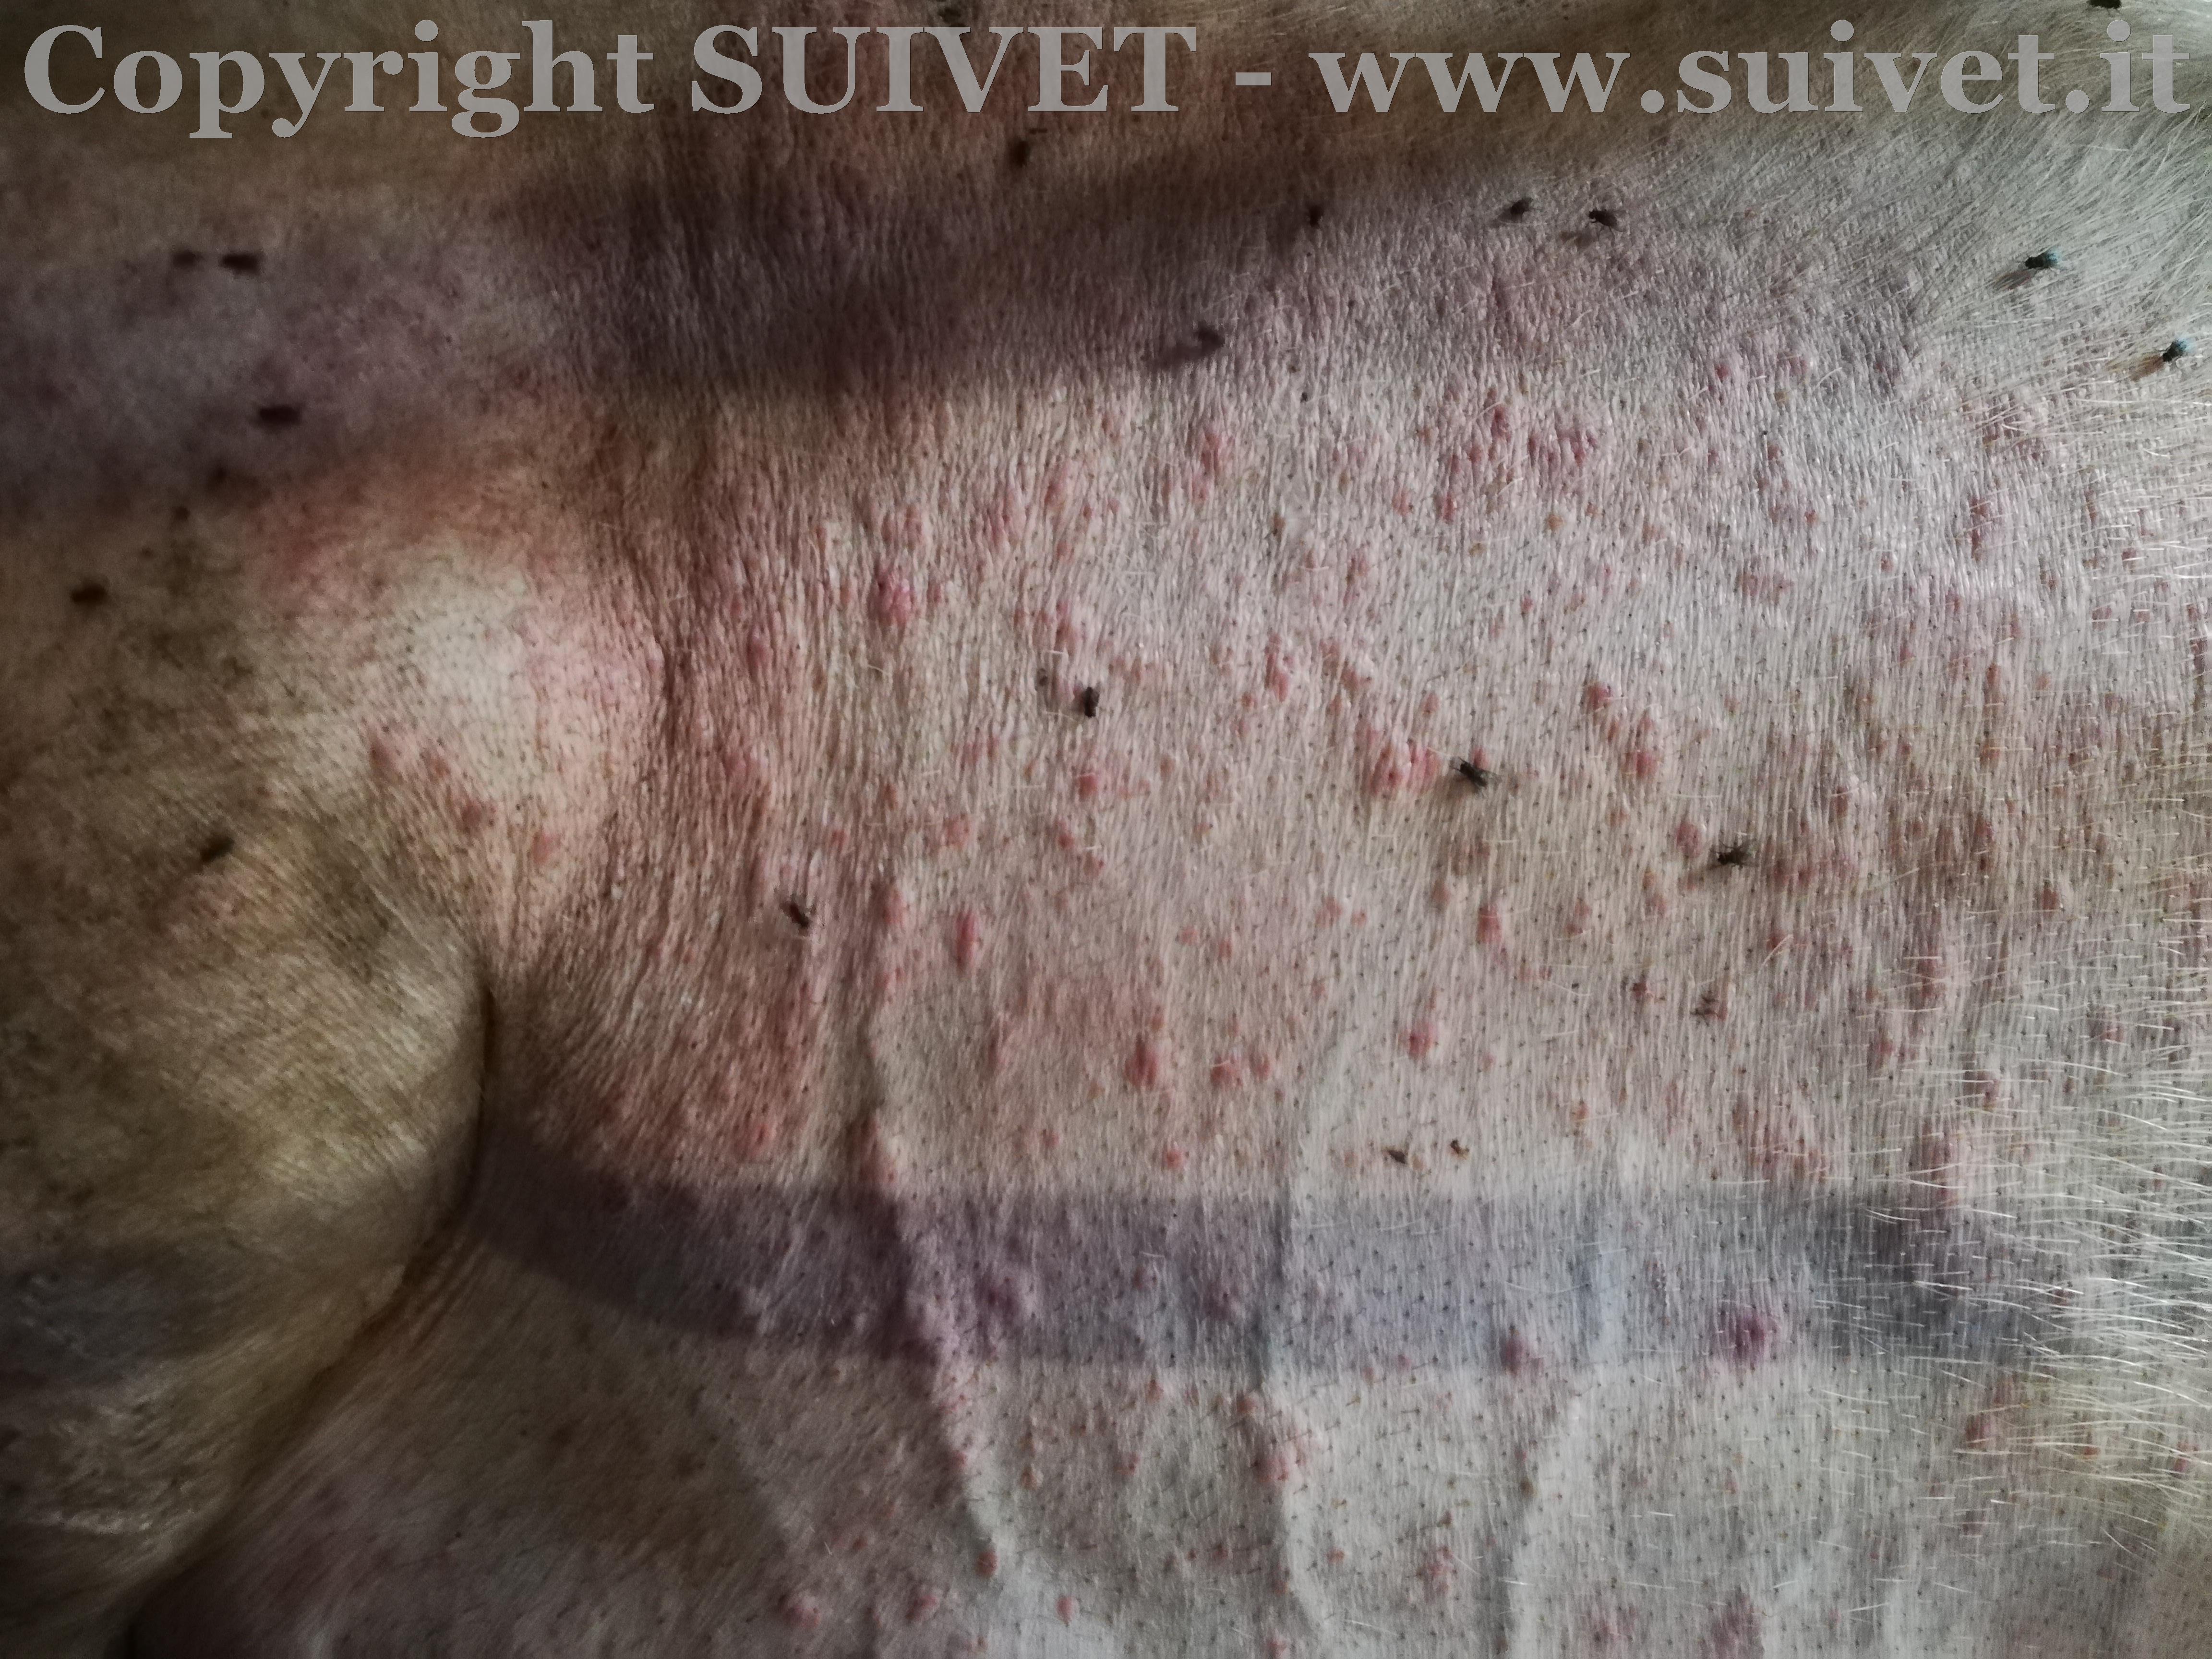 Foto 3: dettaglio delle lesioni cutanee con presenza visibile di mosche sull’animale